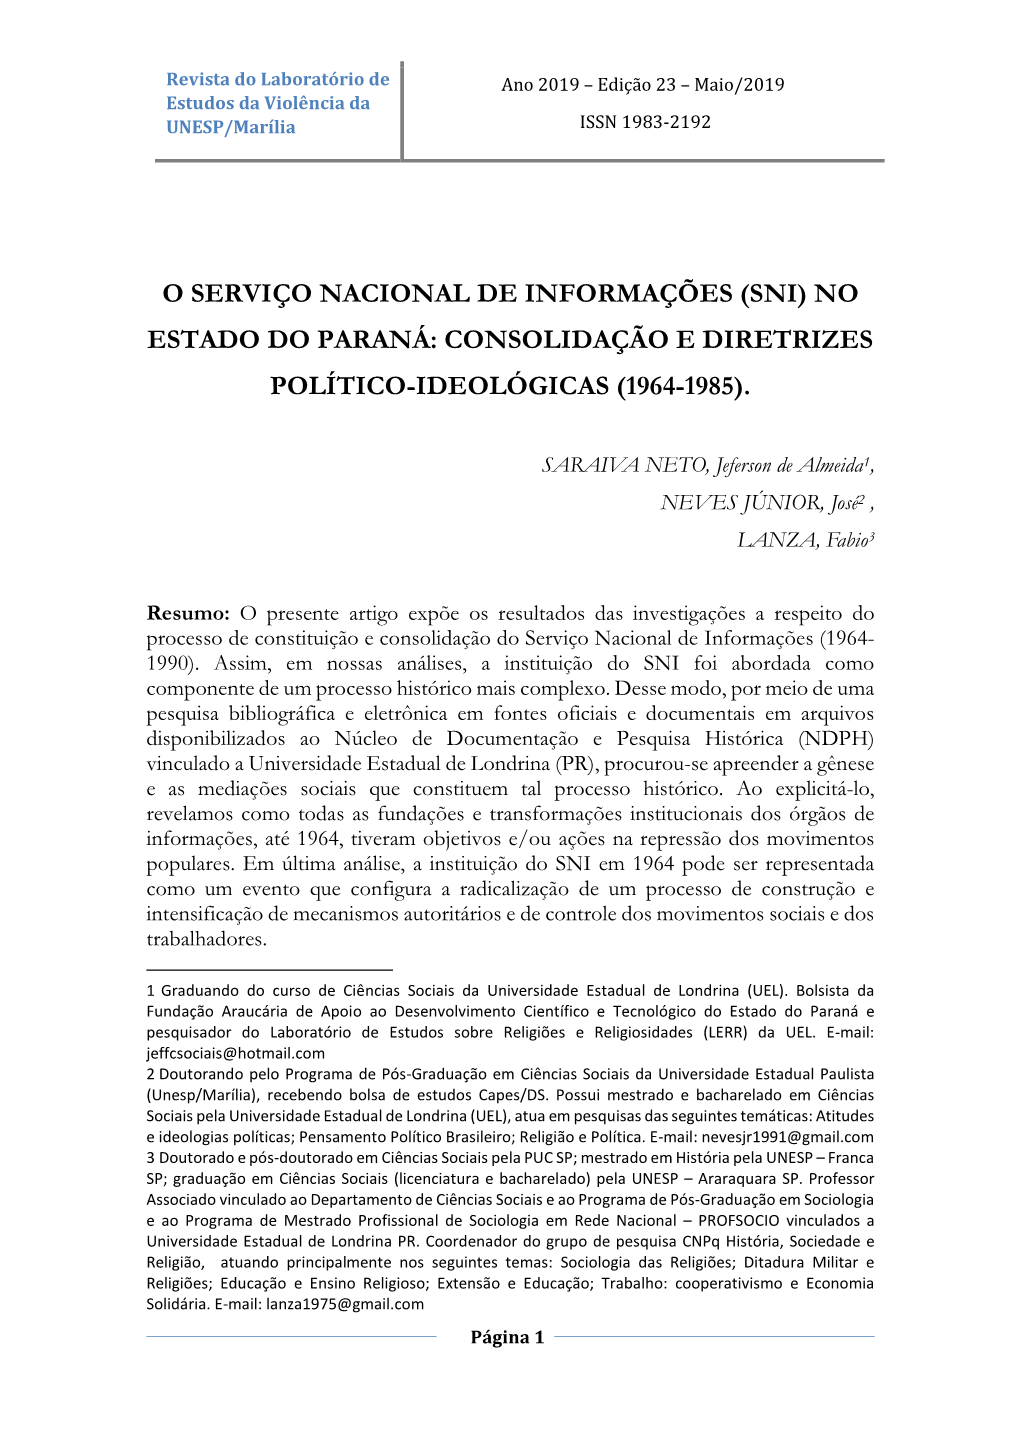 Sni) No Estado Do Paraná: Consolidação E Diretrizes Político-Ideológicas (1964-1985)